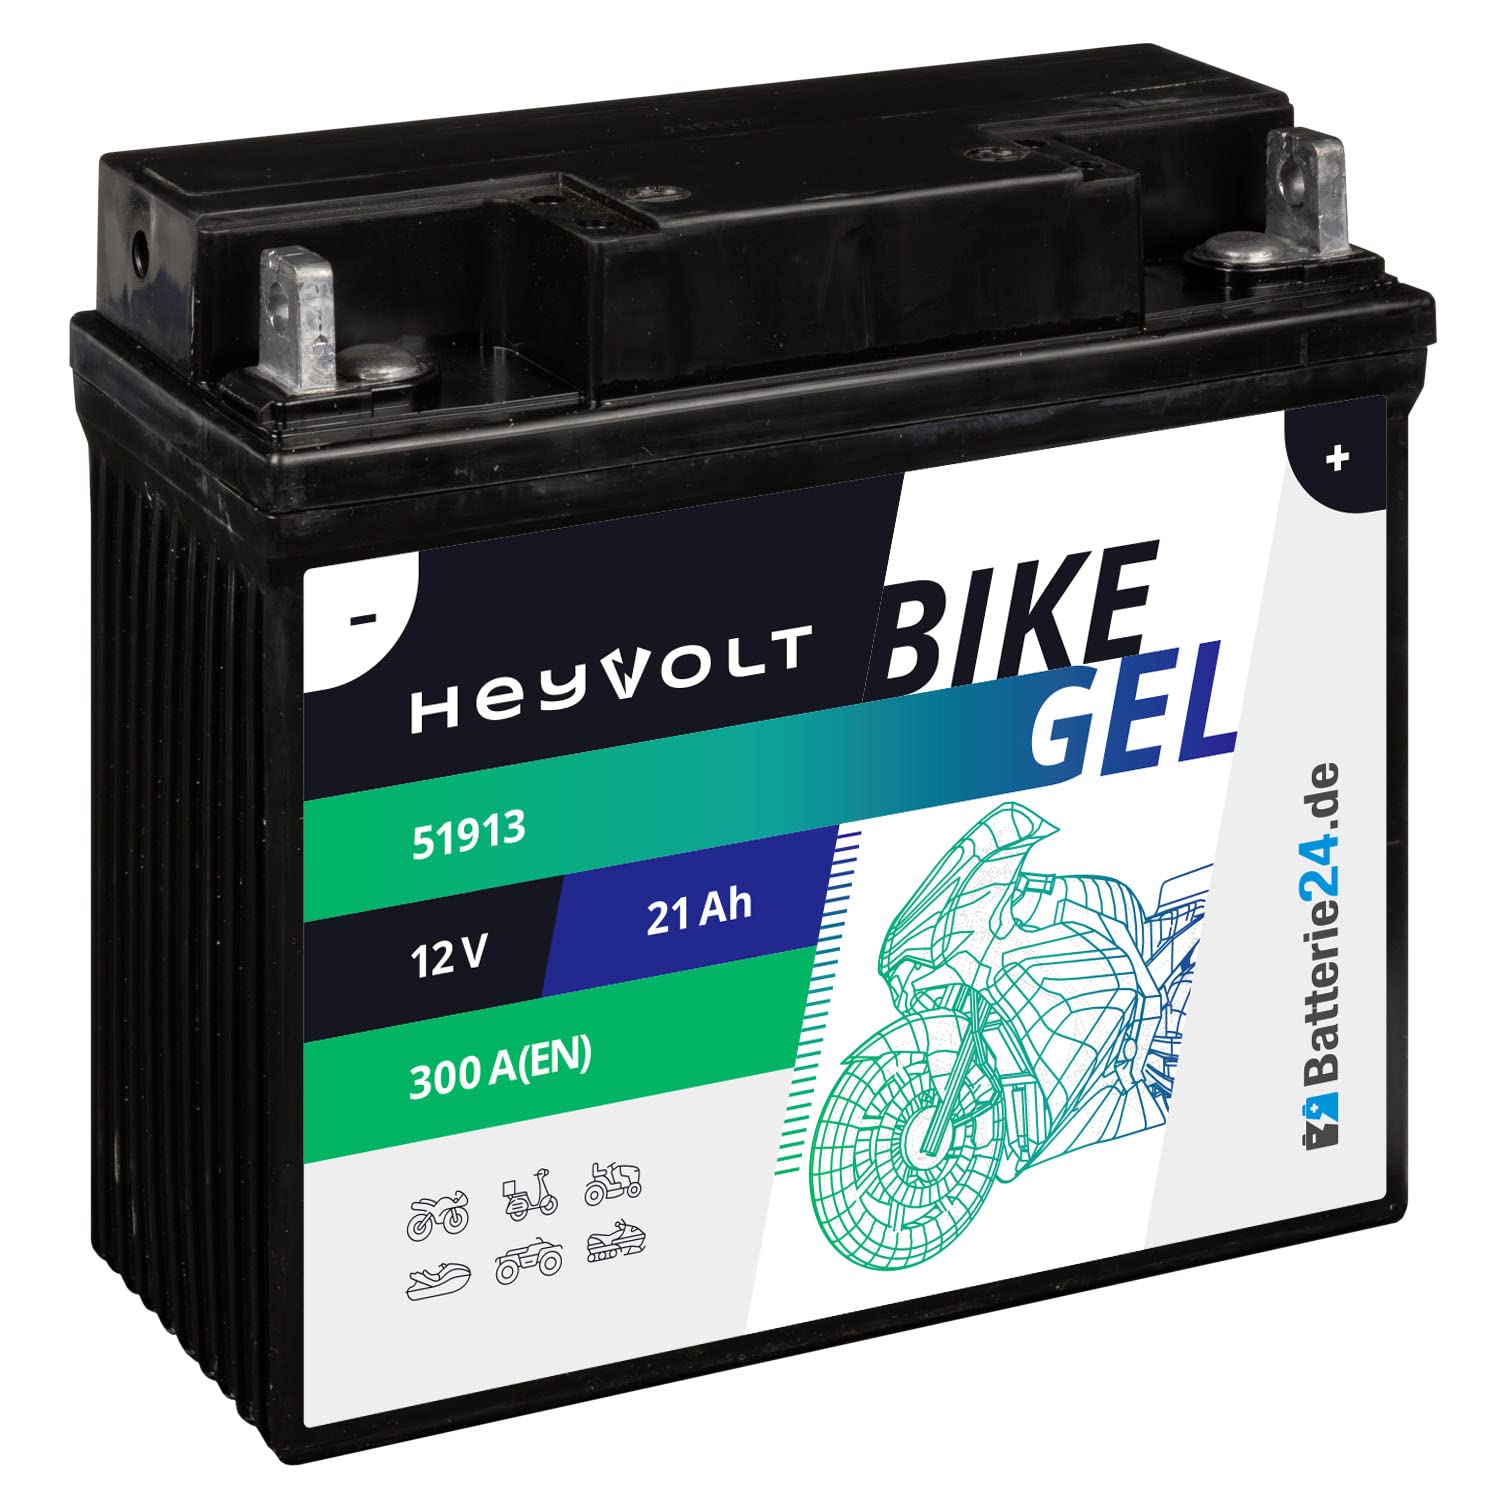 HeyVolt GEL Motorradbatterie 12V 21Ah 51913 R850 R1100 R1150 GS K1200 mit ABS 52001 von Batterie24.de